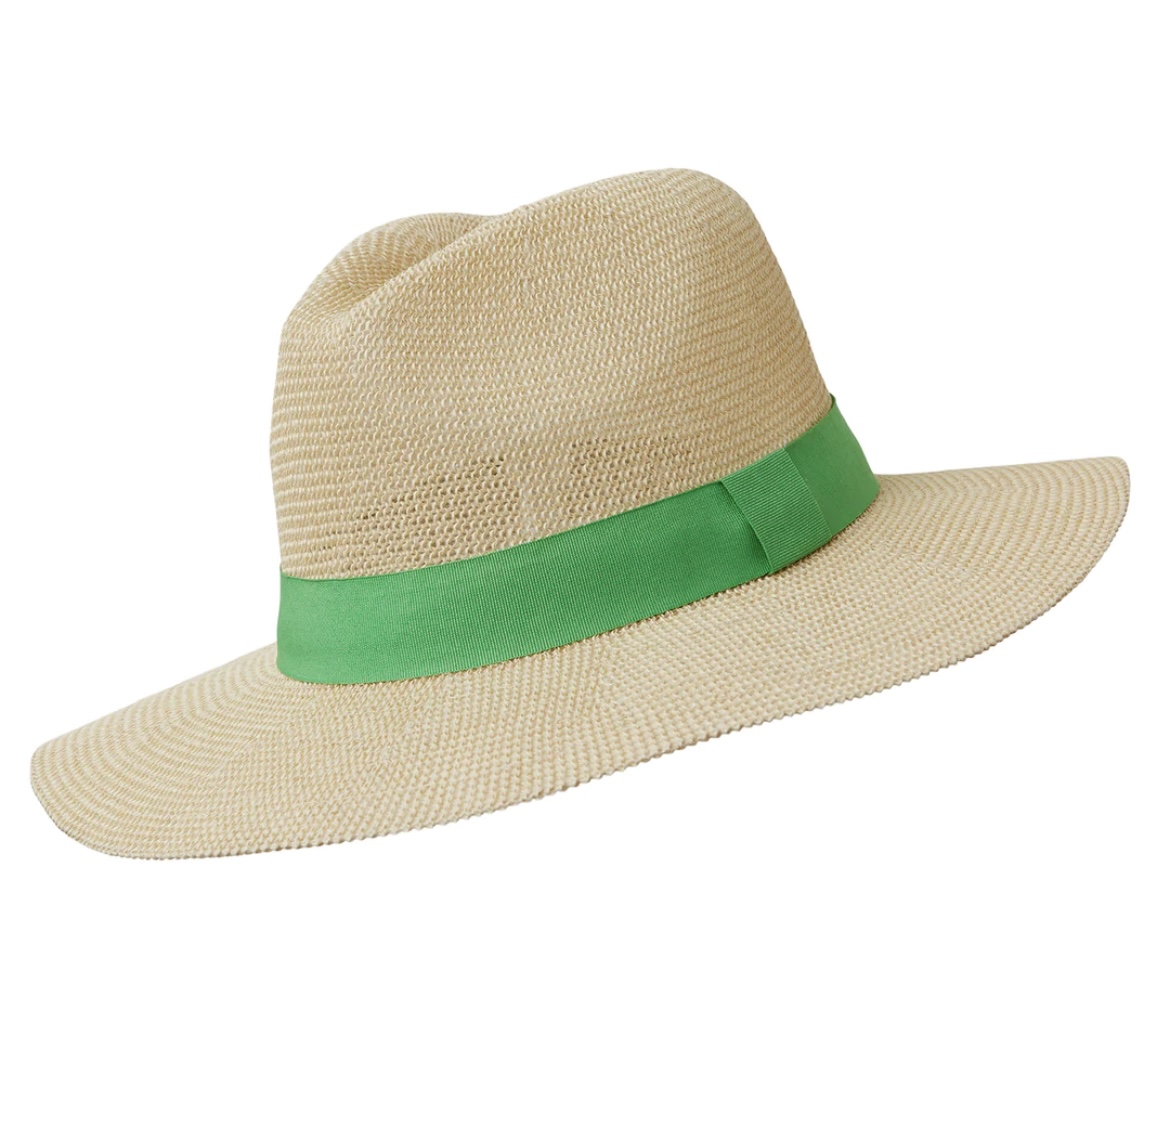 Somerville Panama Sun Hat - Green